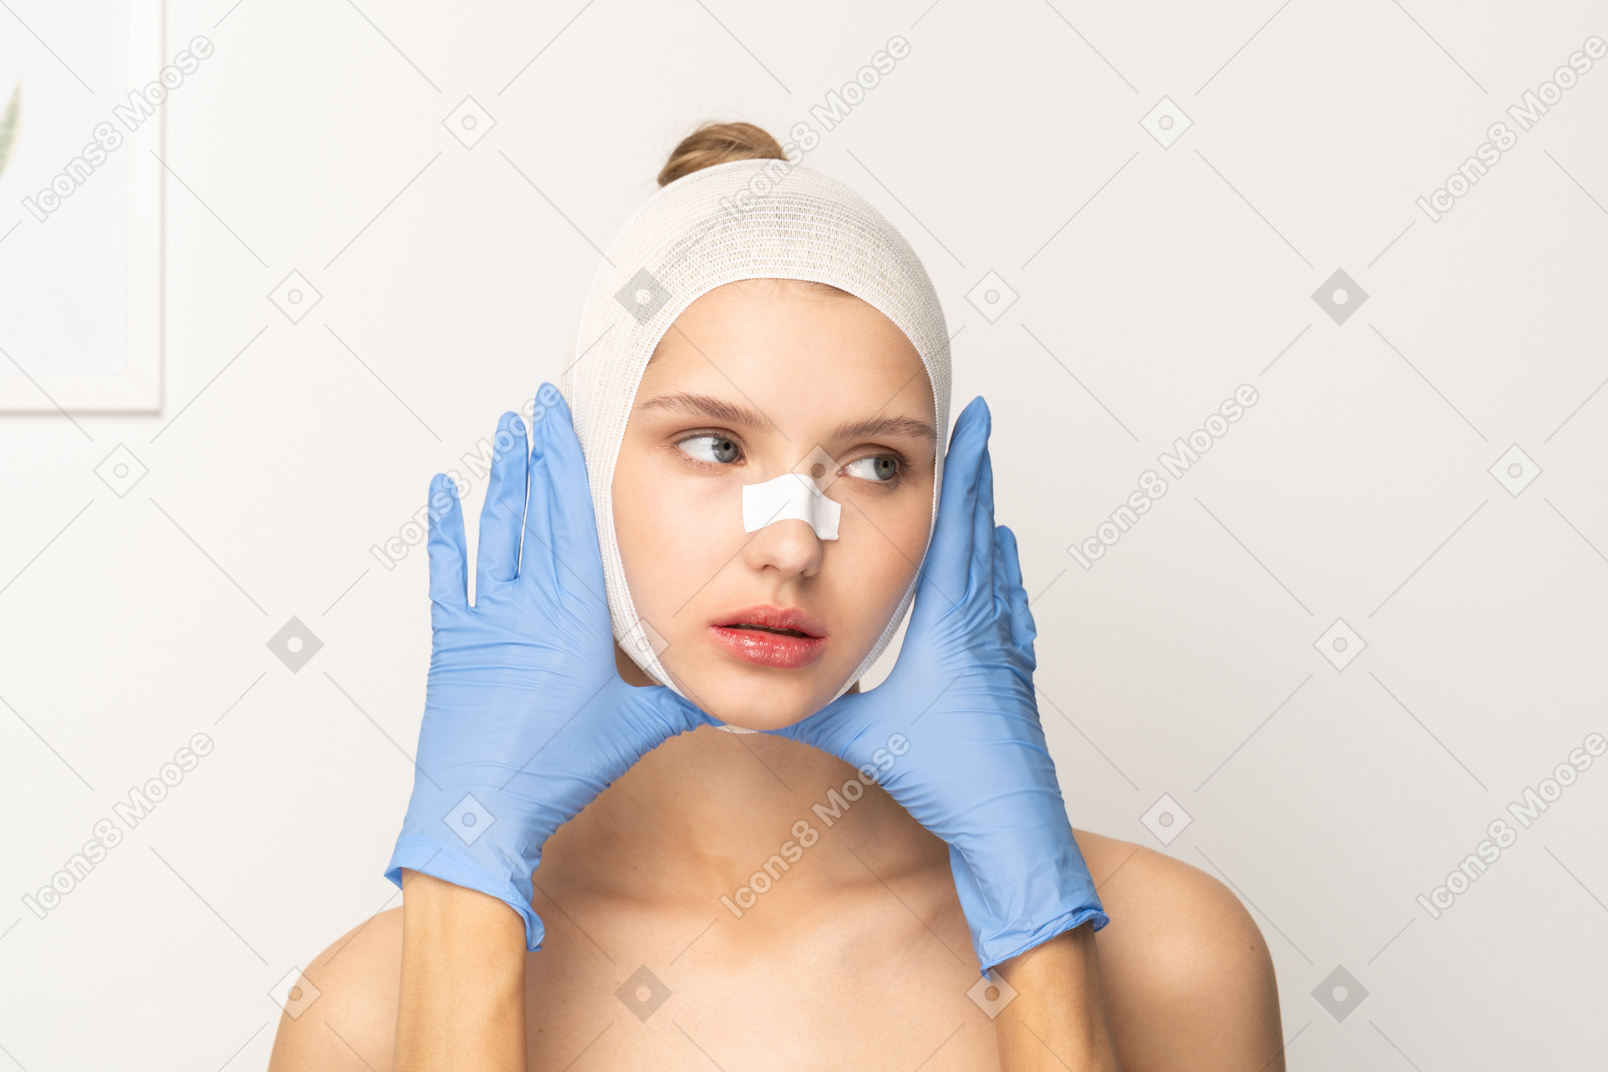 Paciente femenina con manos enguantadas enmarcando su rostro